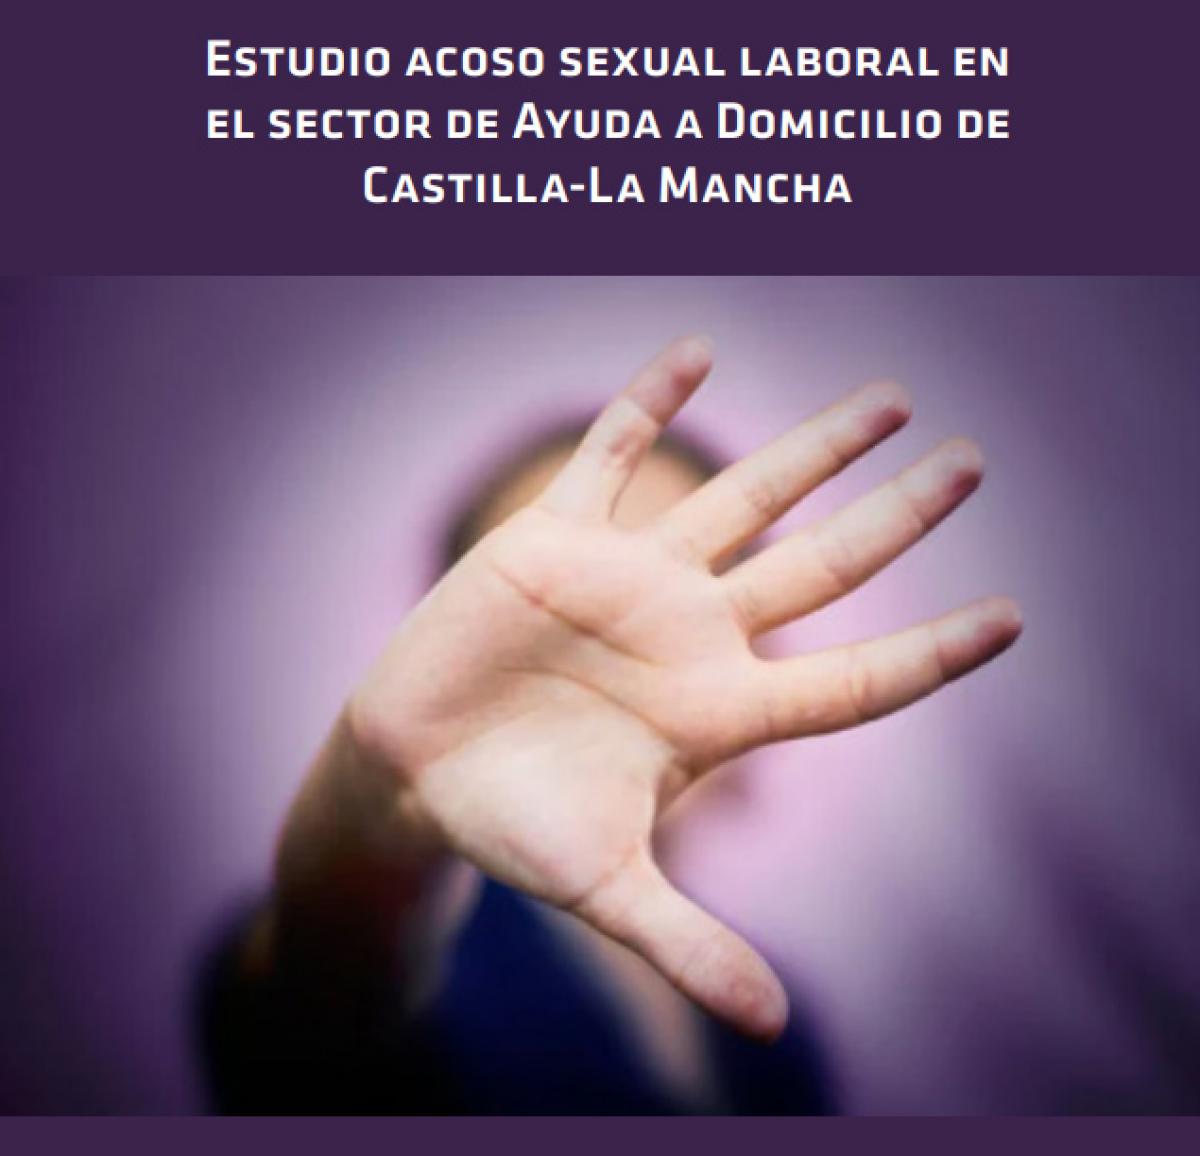 Acoso sexual laboral en el sector de ayuda a domicilio de Castilla - La Mancha